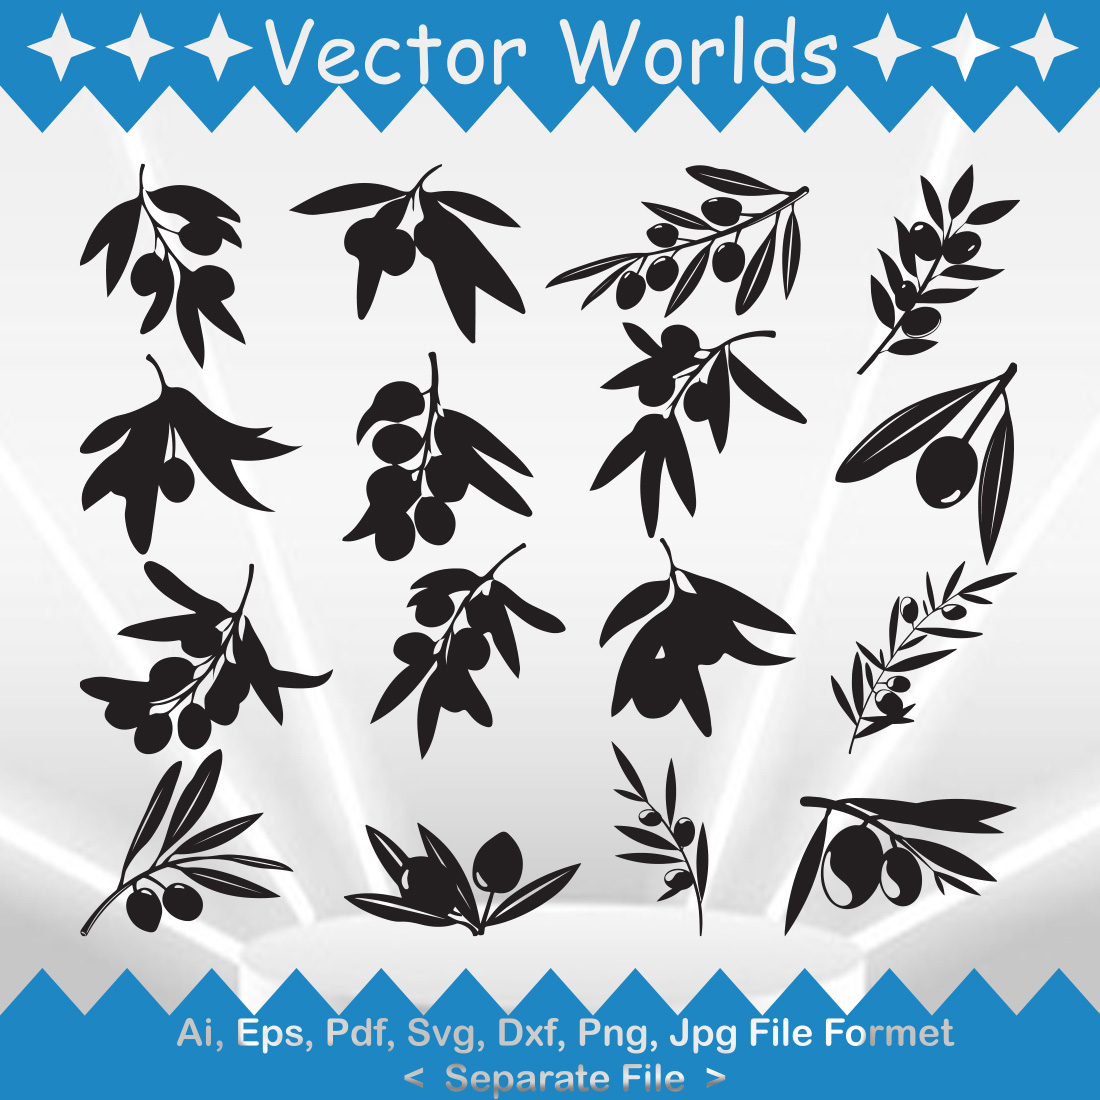 Olive branch SVG Vector Design cover image.